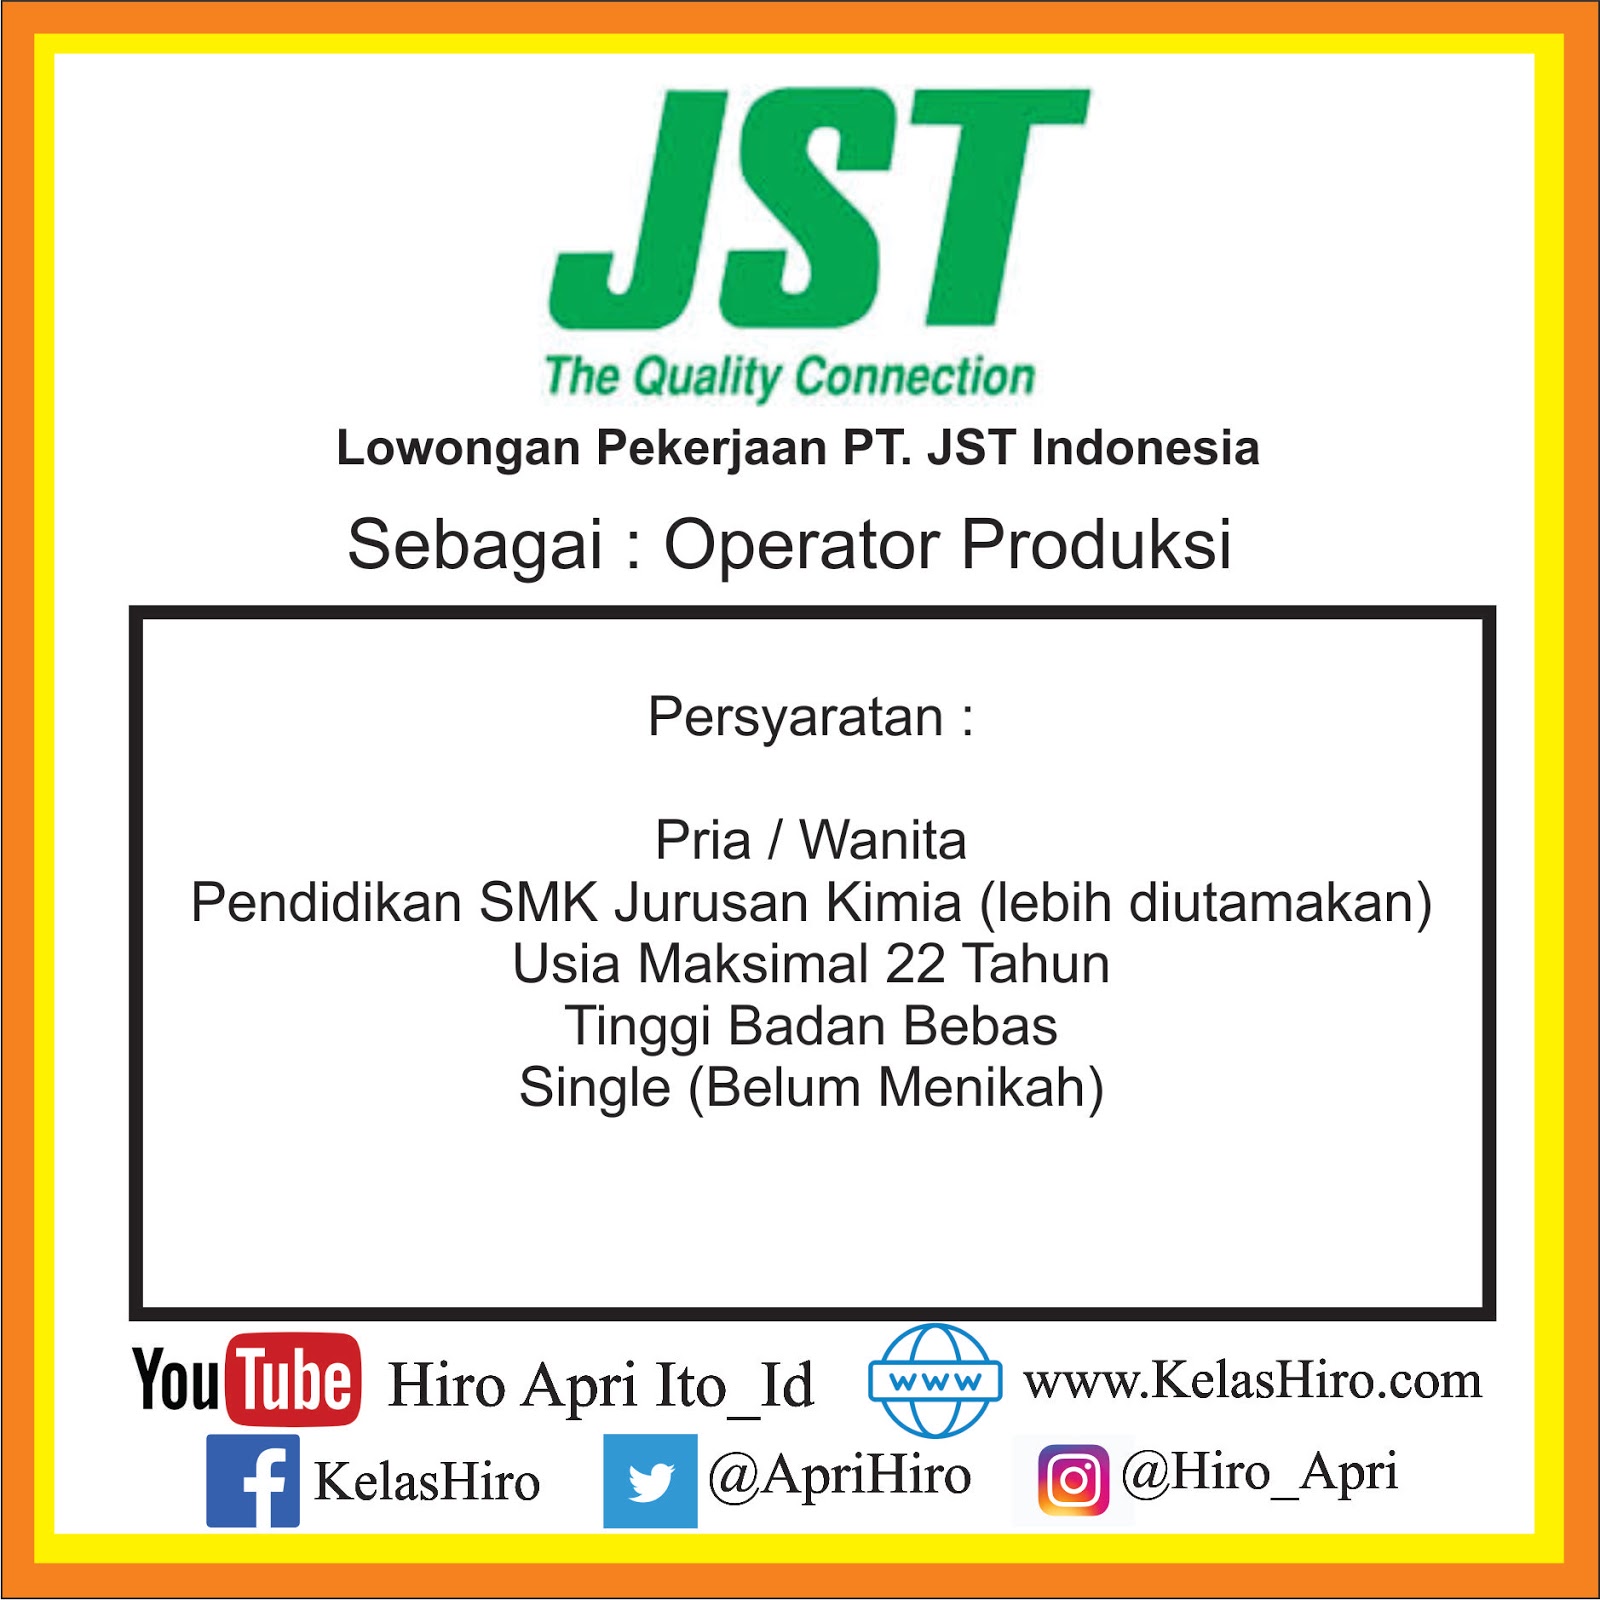 Lowongan Pekerjaan PT. JST Indonesia April 2019 | Kelas Hiro